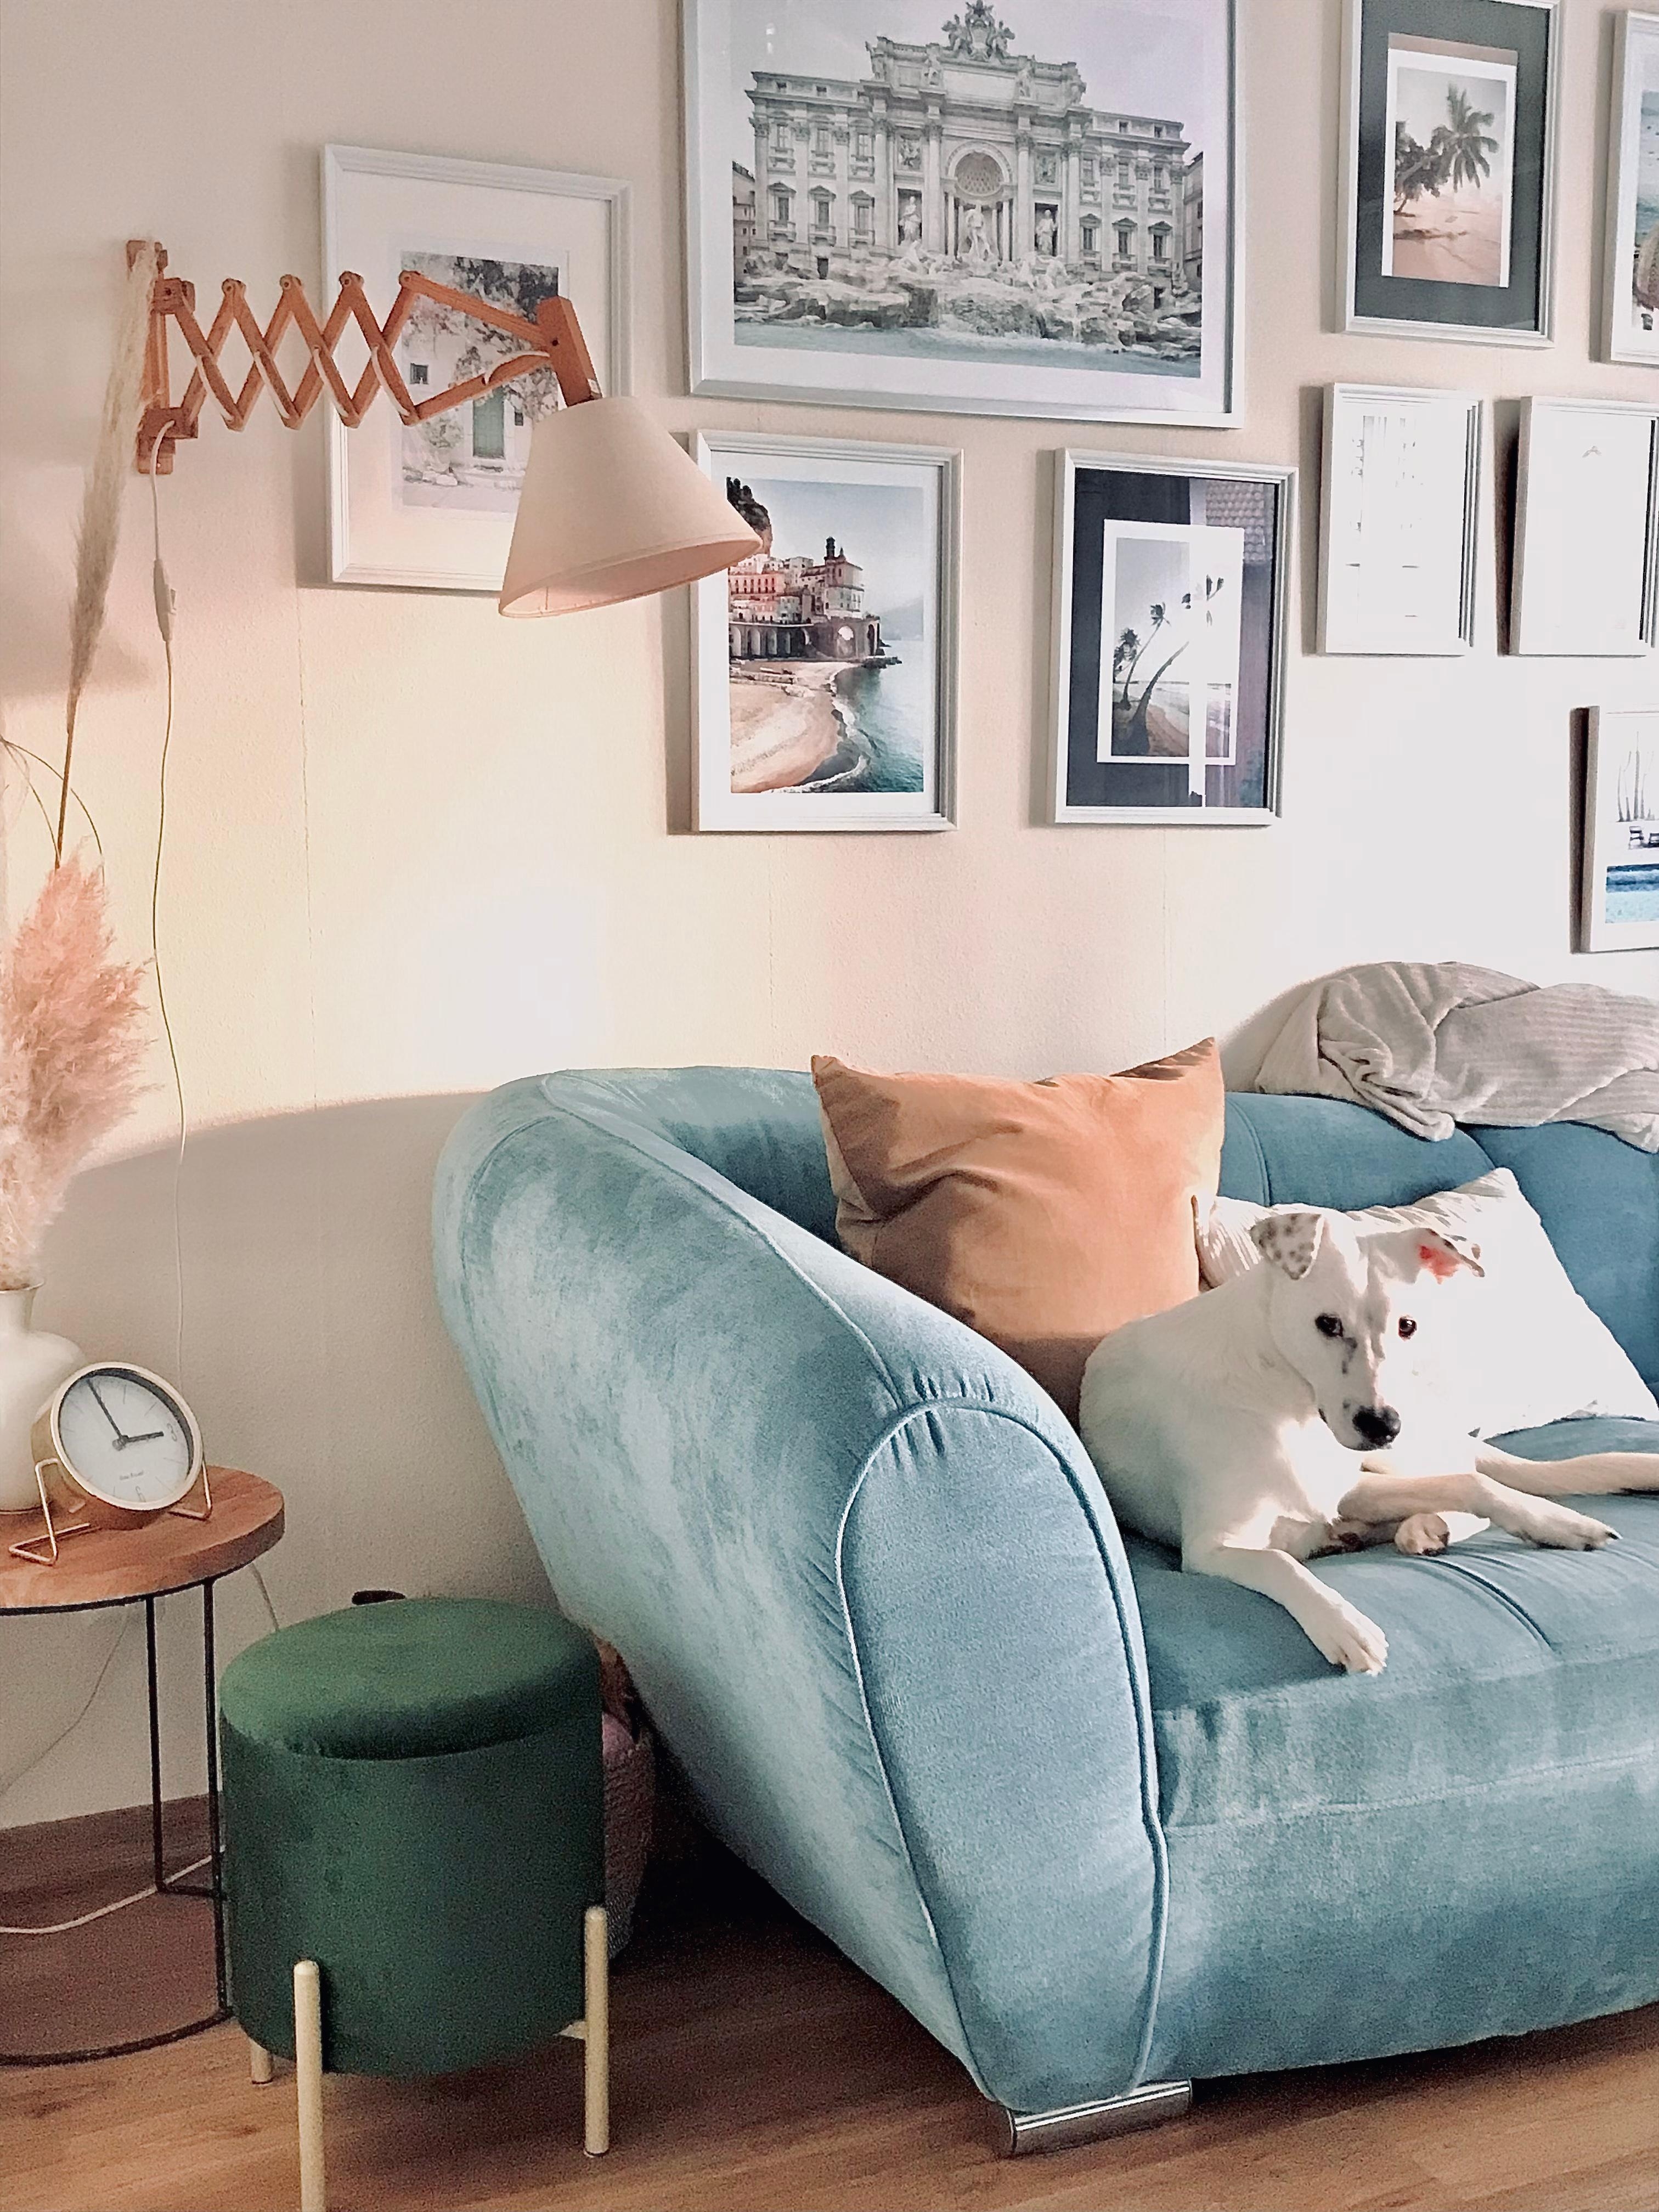 Couchliebe auch bei Avy. 🤍💙
#wandlampe #bilderwand #couch #hocker #tisch #wohnzimmer #home
#cozy #doglove 